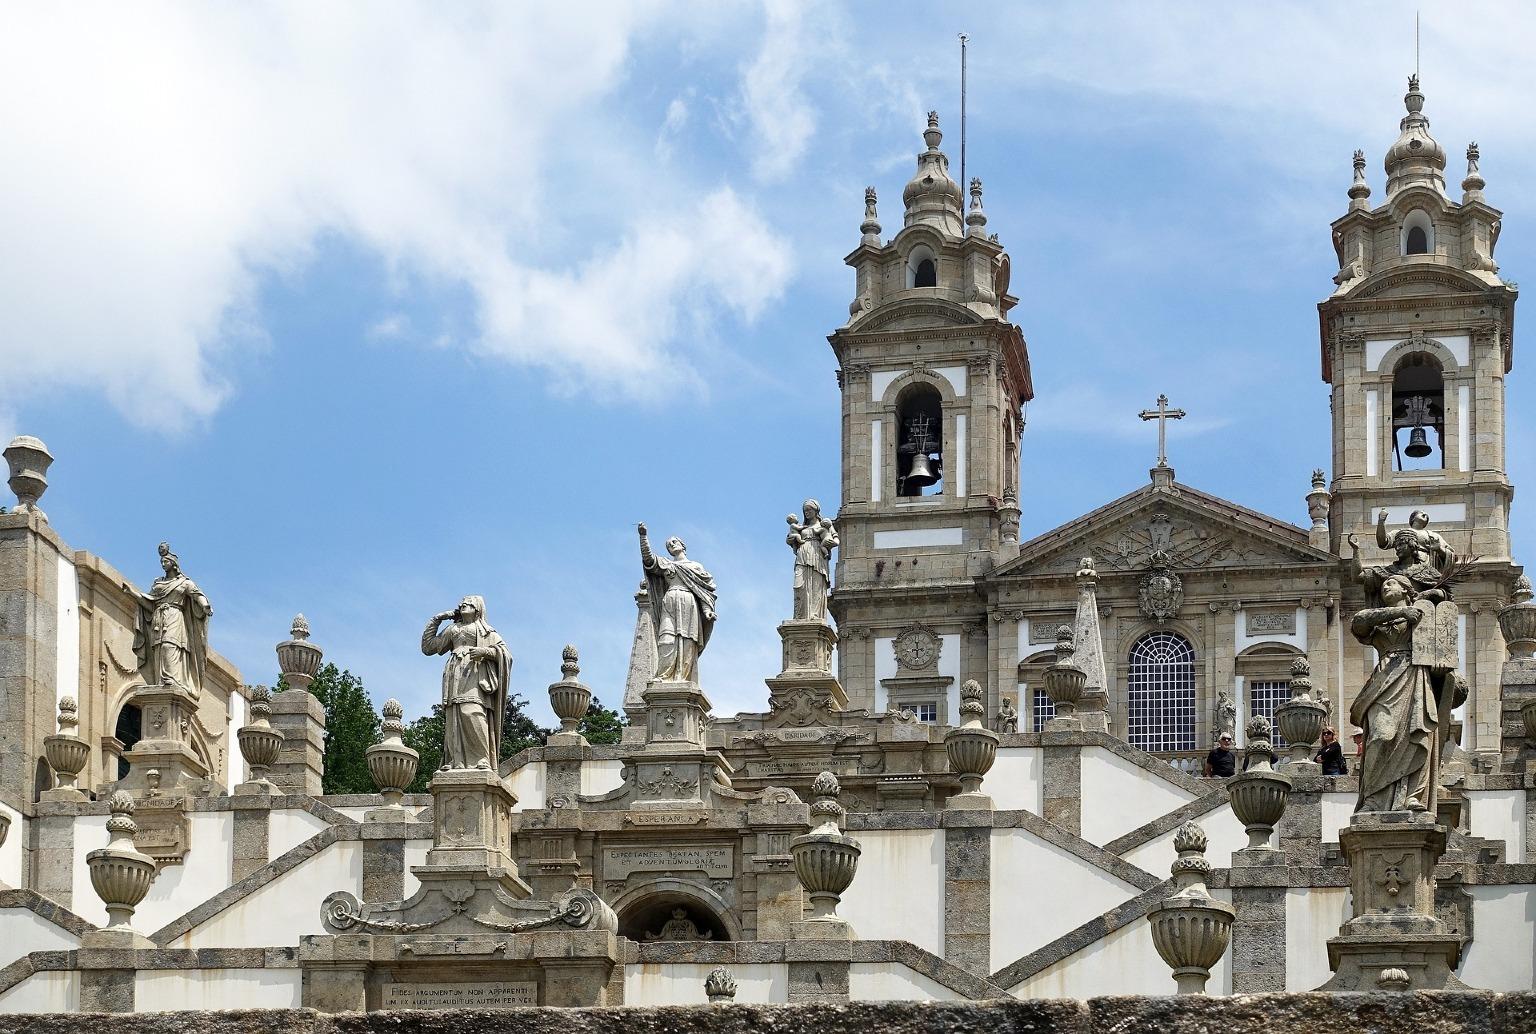 Majestueuse église de Bom Jesus do Monte à Braga, avec son escalier emblématique orné de statues bibliques.